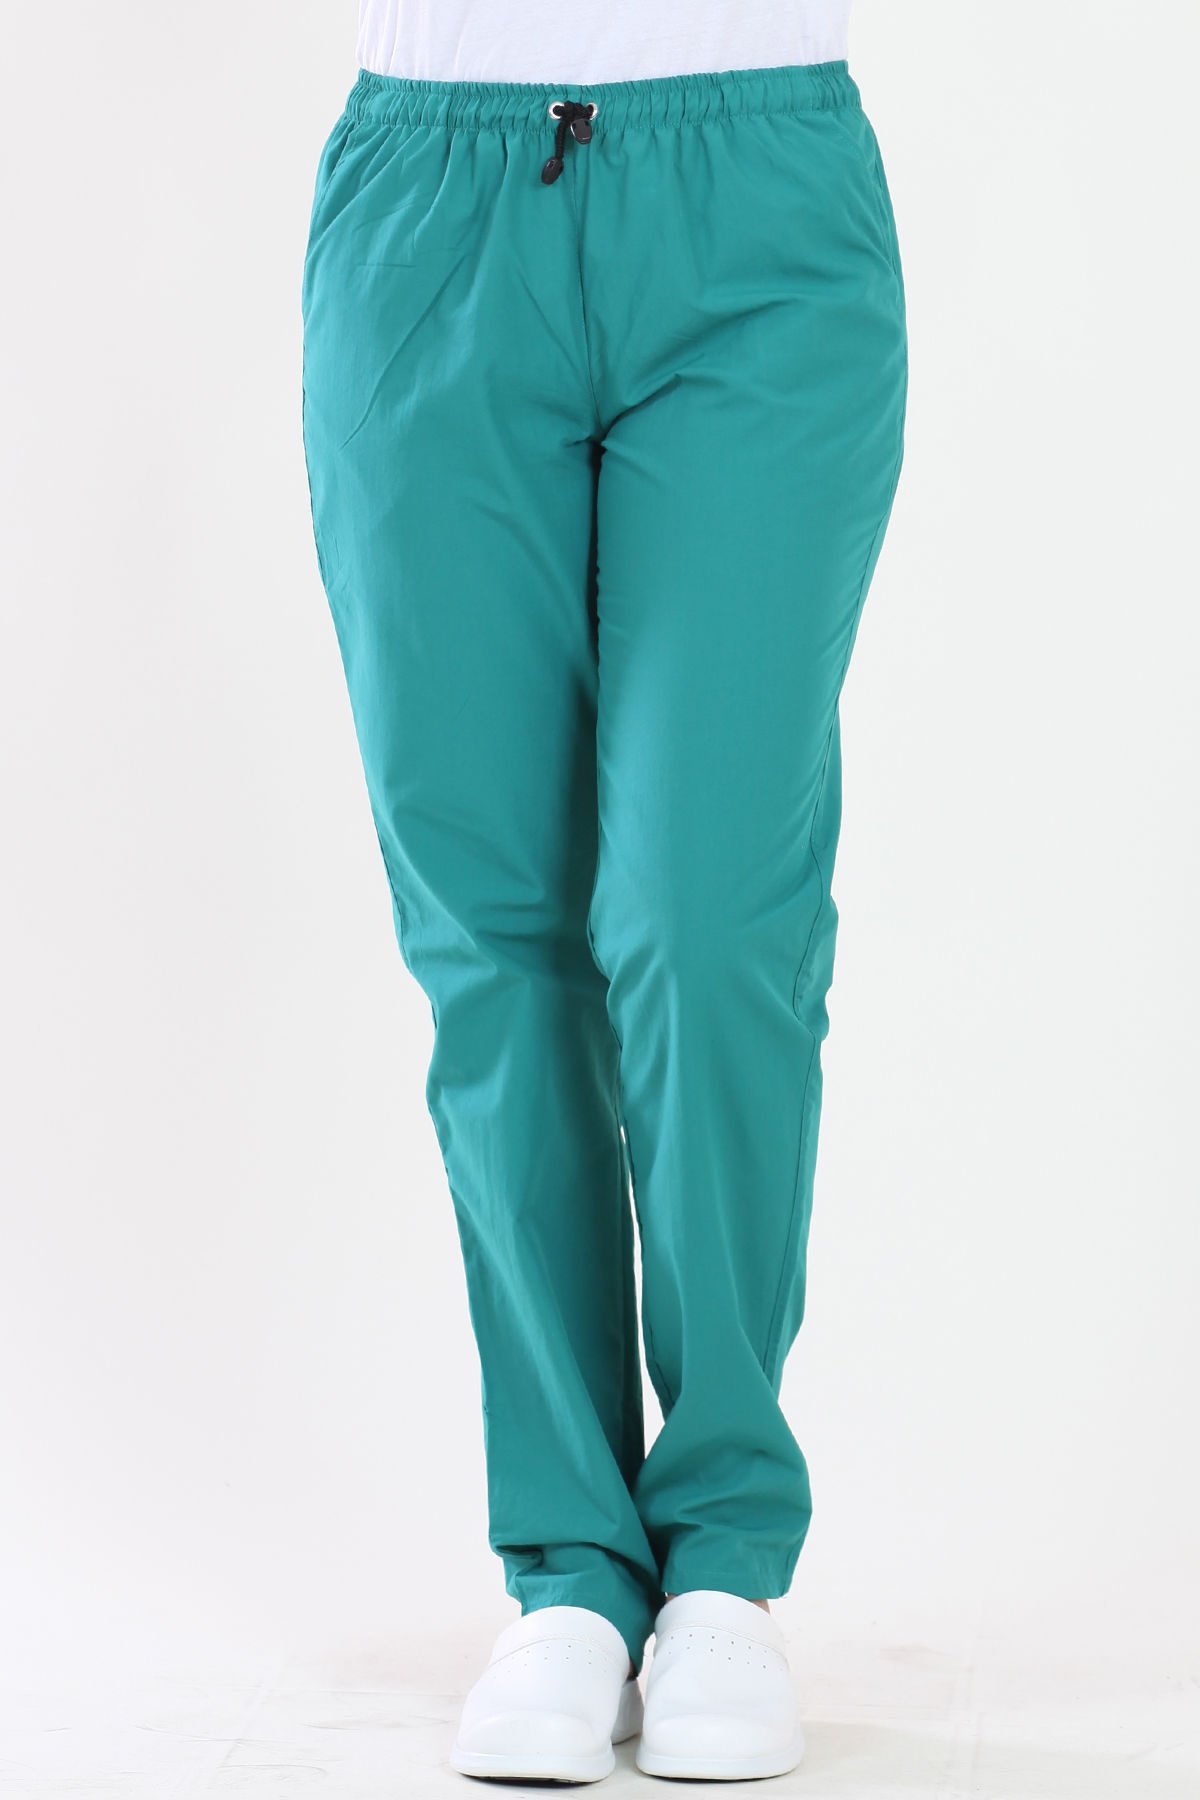 Lastikli Terikoton Cerrahi Yeşil Medikal Pantolon